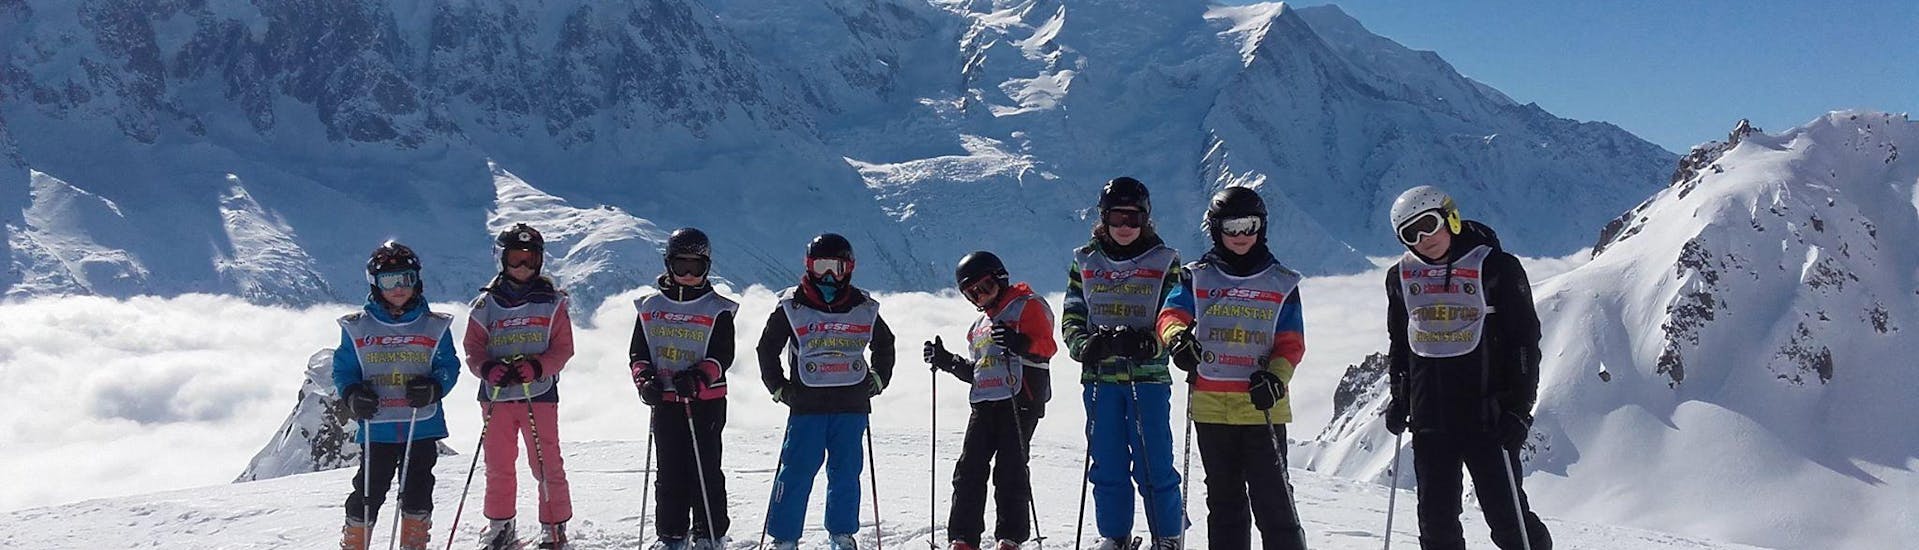 Des skieurs se tiennent devant un paysage de montagnes enneigées pendant leur Cours de ski Enfants (5-12 ans) - Basse saison - Avancé avec l'école de ski ESF Chamonix.